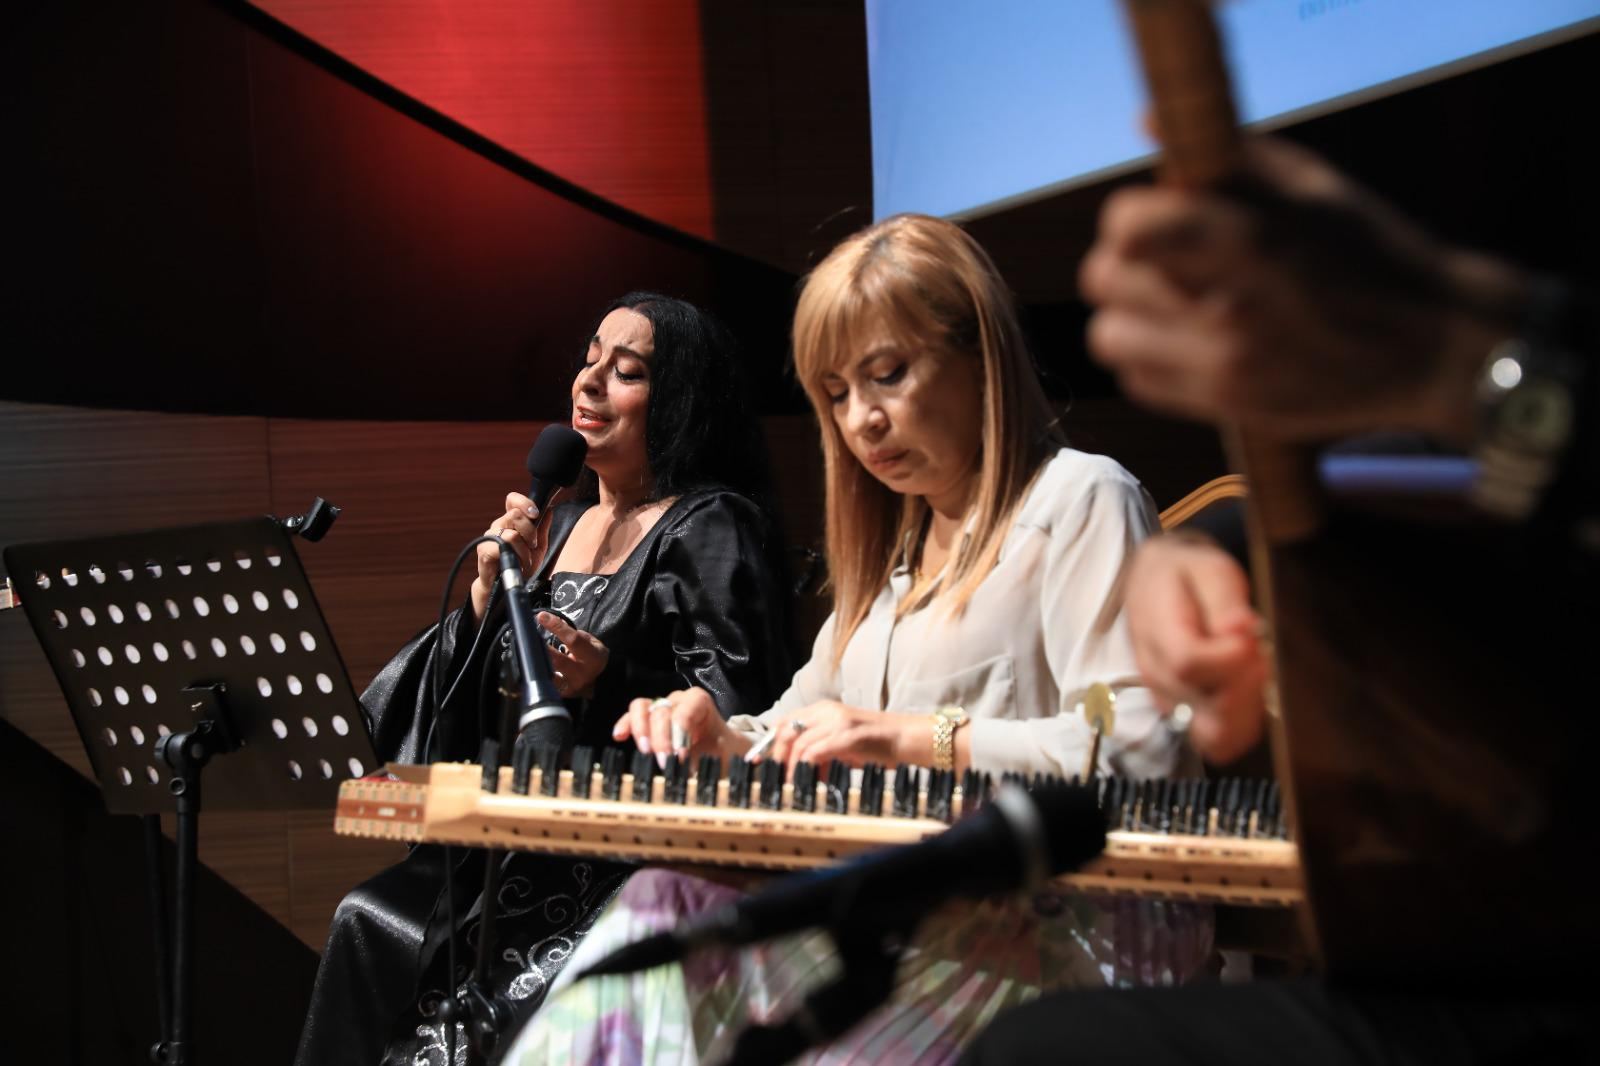 В Баку прошел концерт, посвященный творчеству Ашуга Вейселя  (ФОТО)